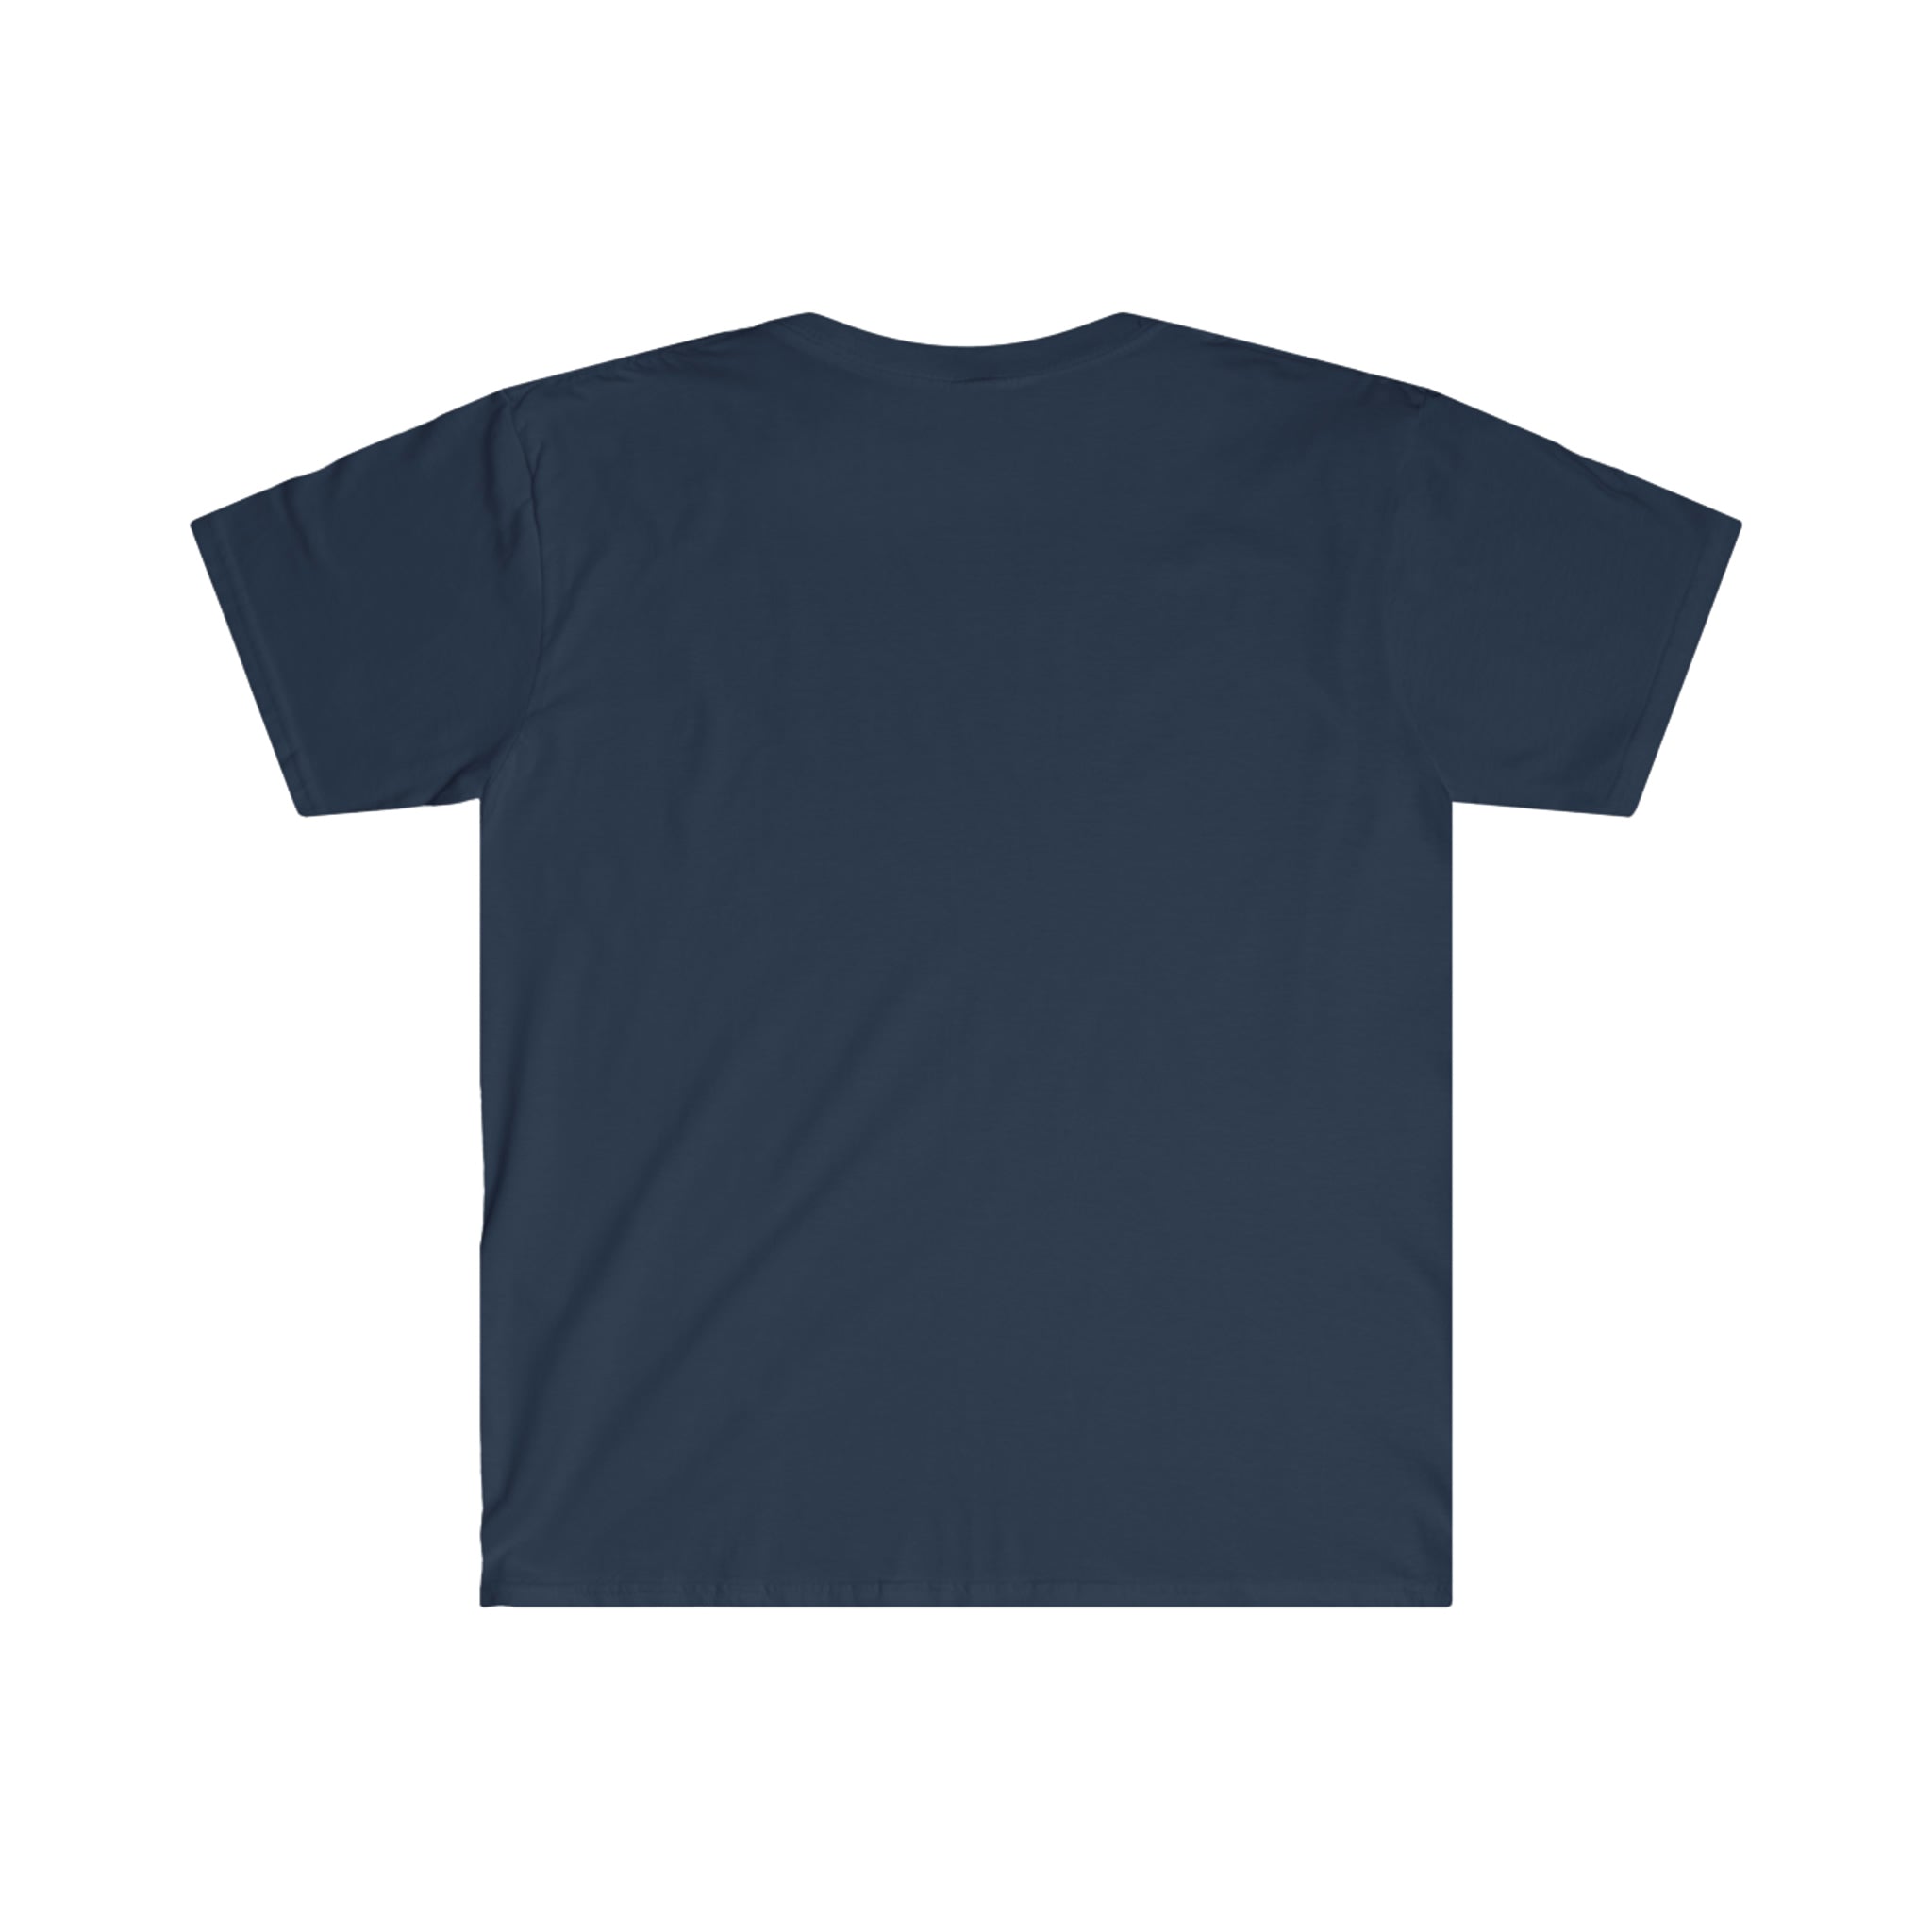 Micro Gainz Logo T-Shirt